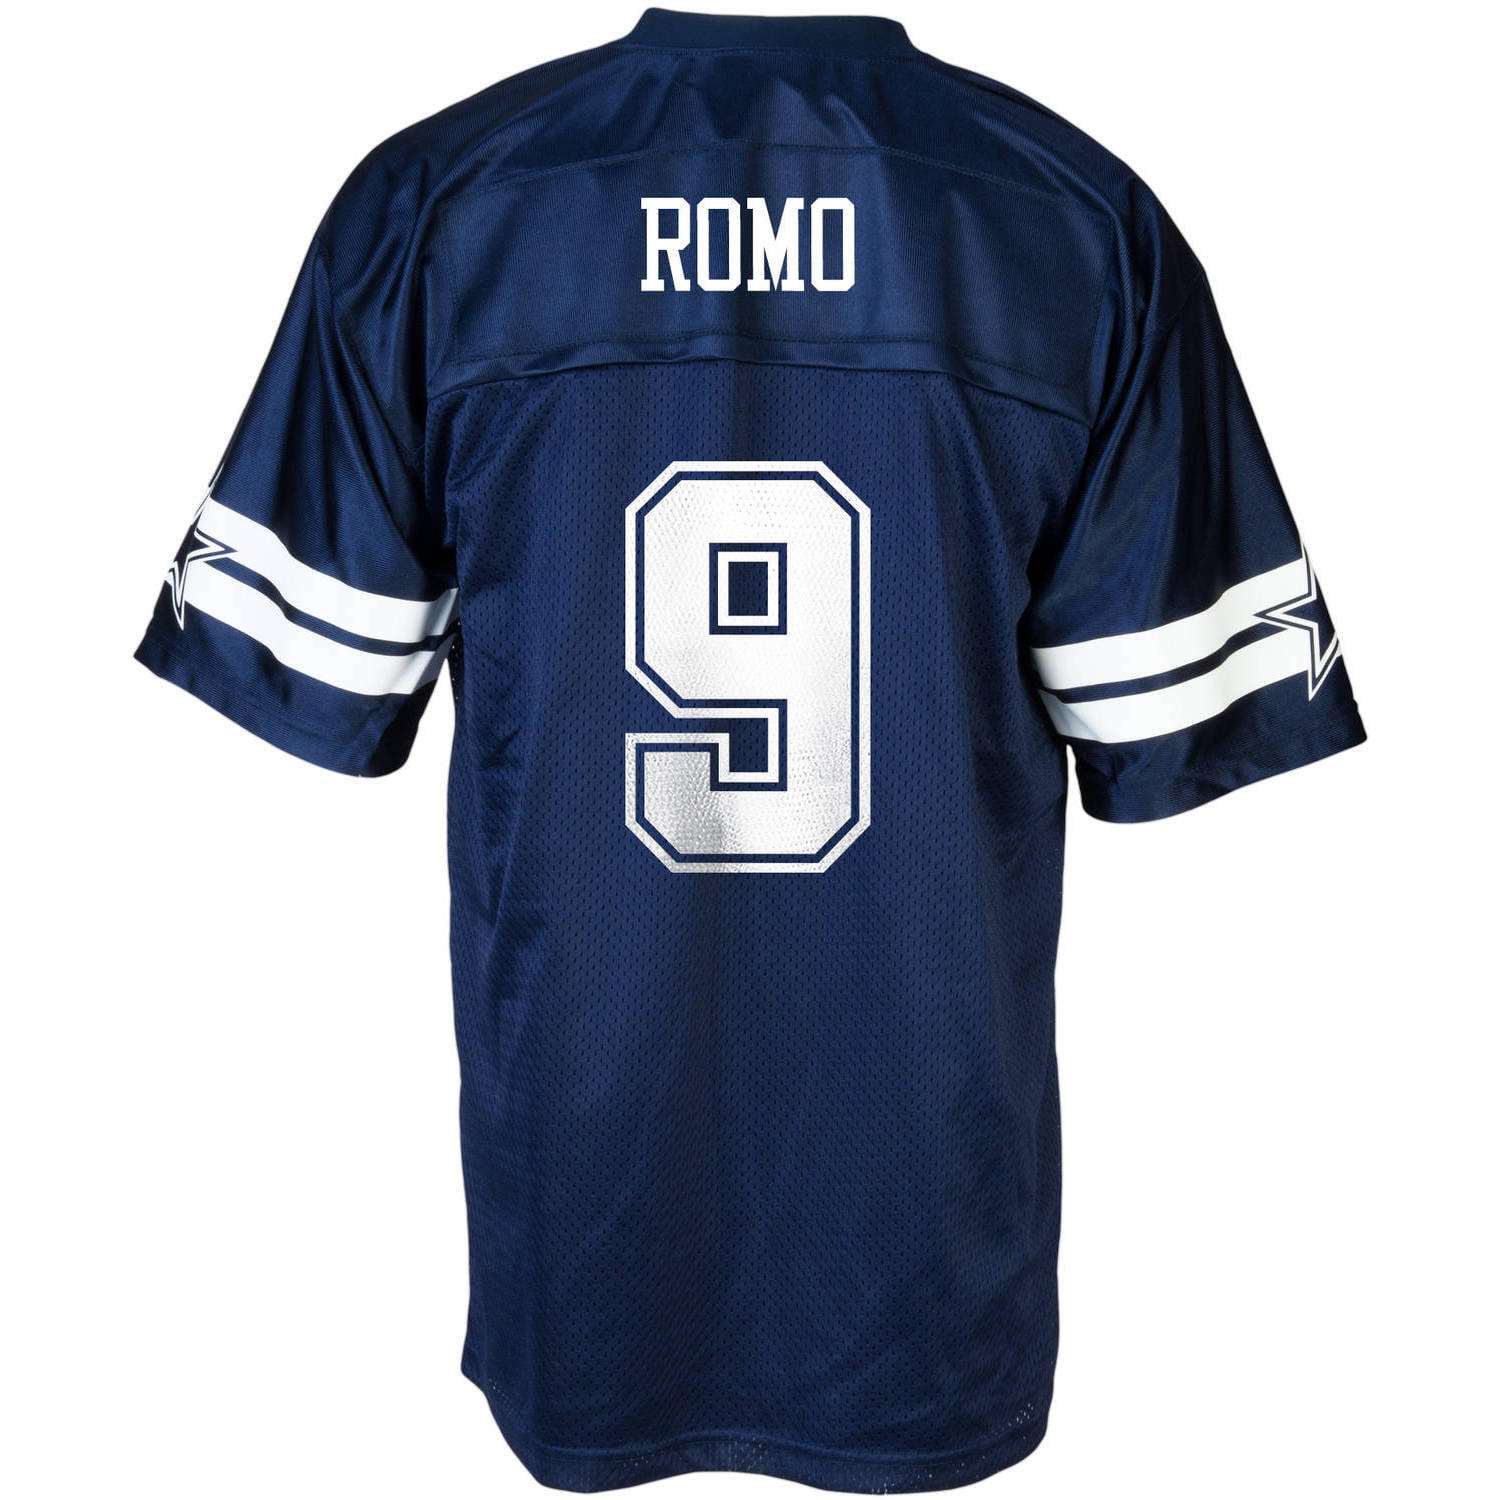 î€€NFLî€ Dallas Cowboys î€€Men\'sî€ Tony Romo î€€Jerseyî€ - Walmart.com - Walmart.com